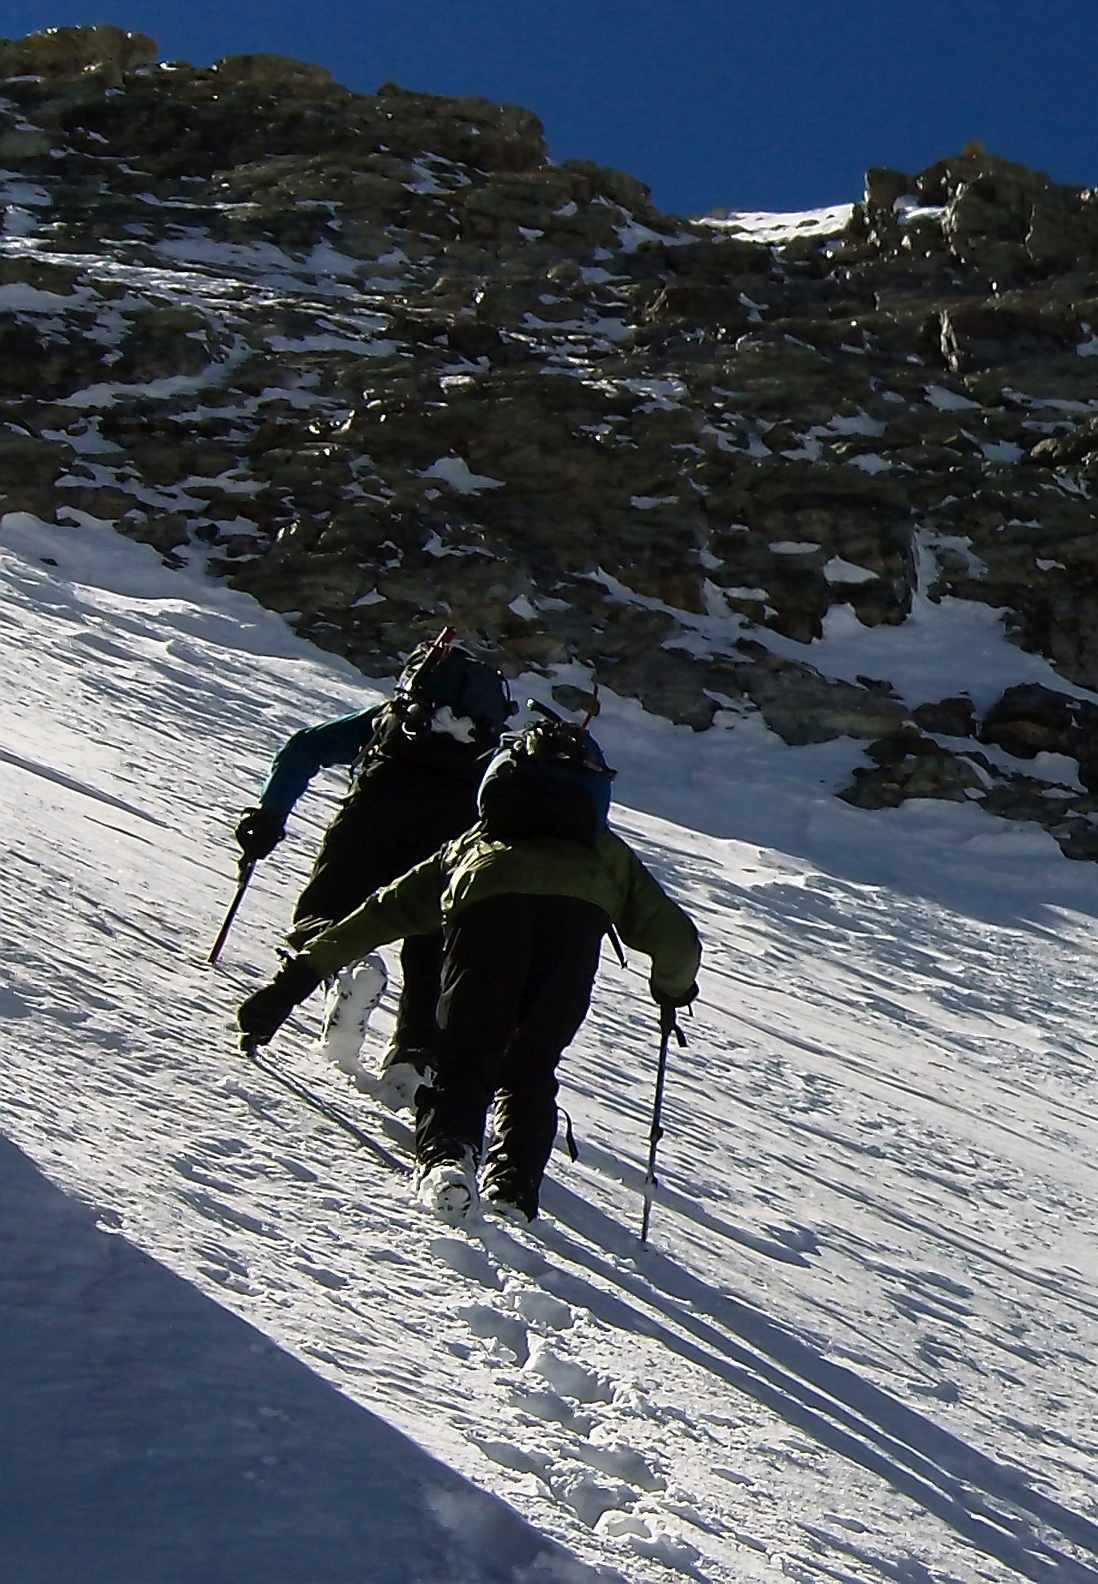 Winter Mtn - Sierra Boot